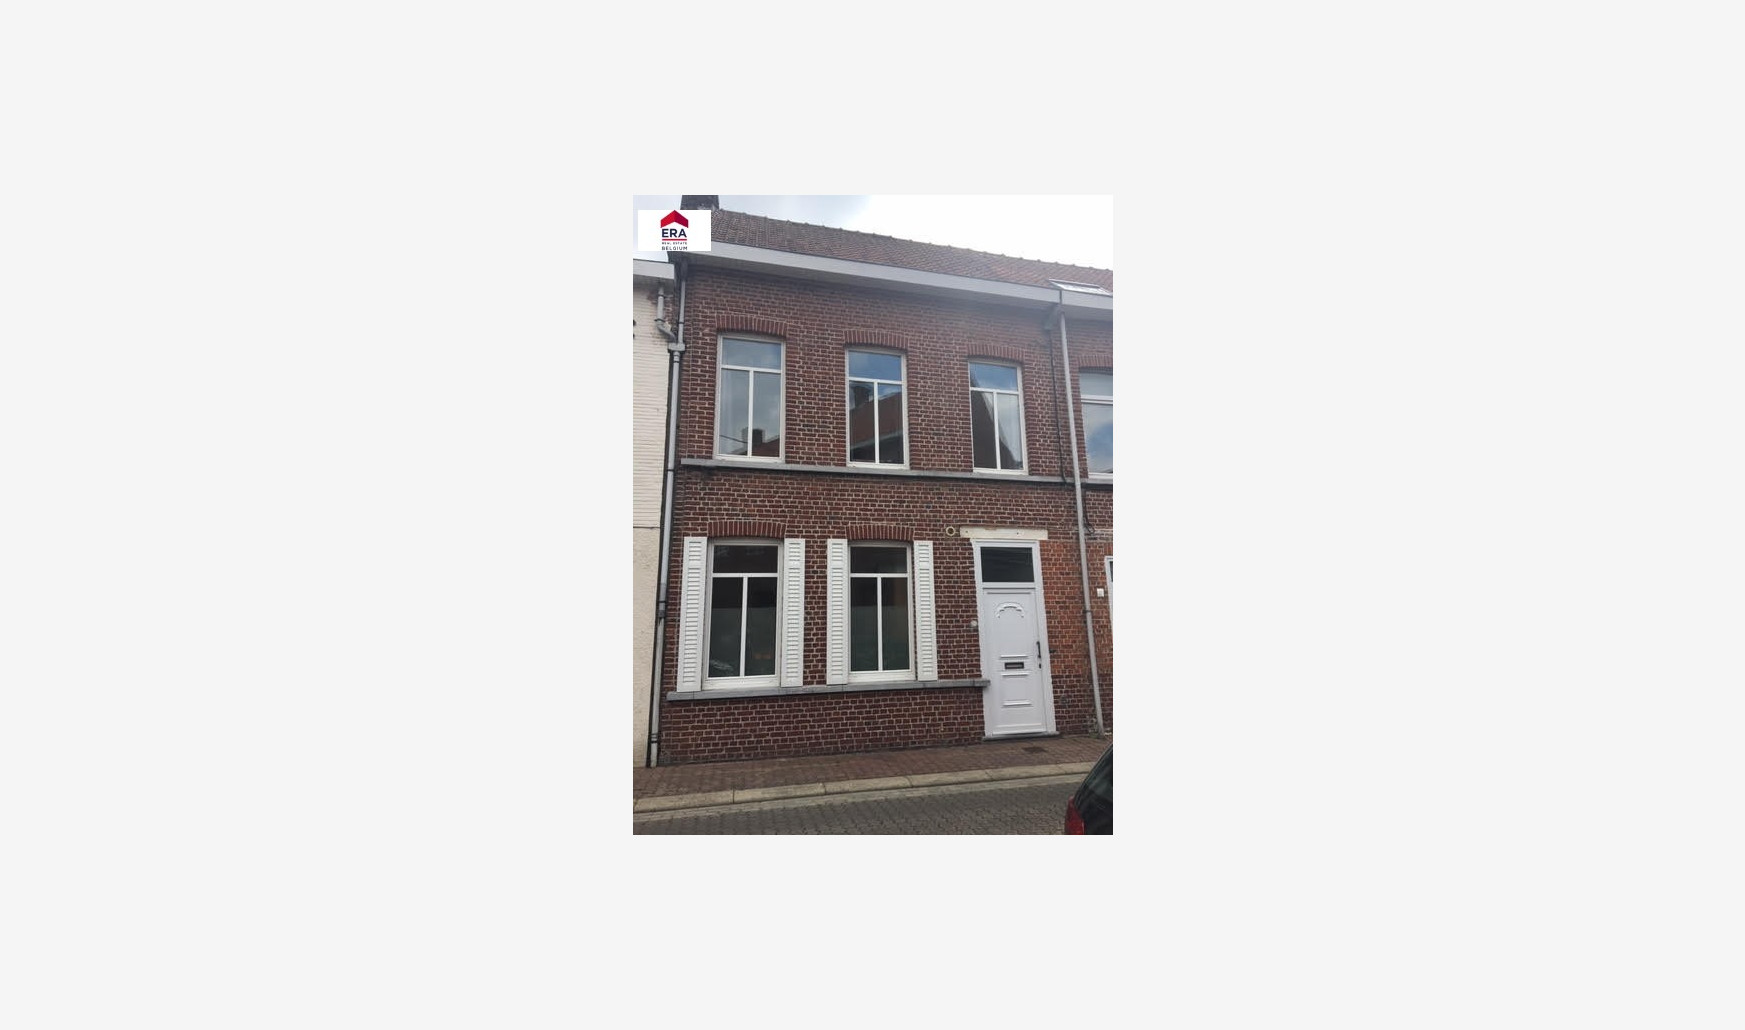 Speiestraat - 44 - - 8940